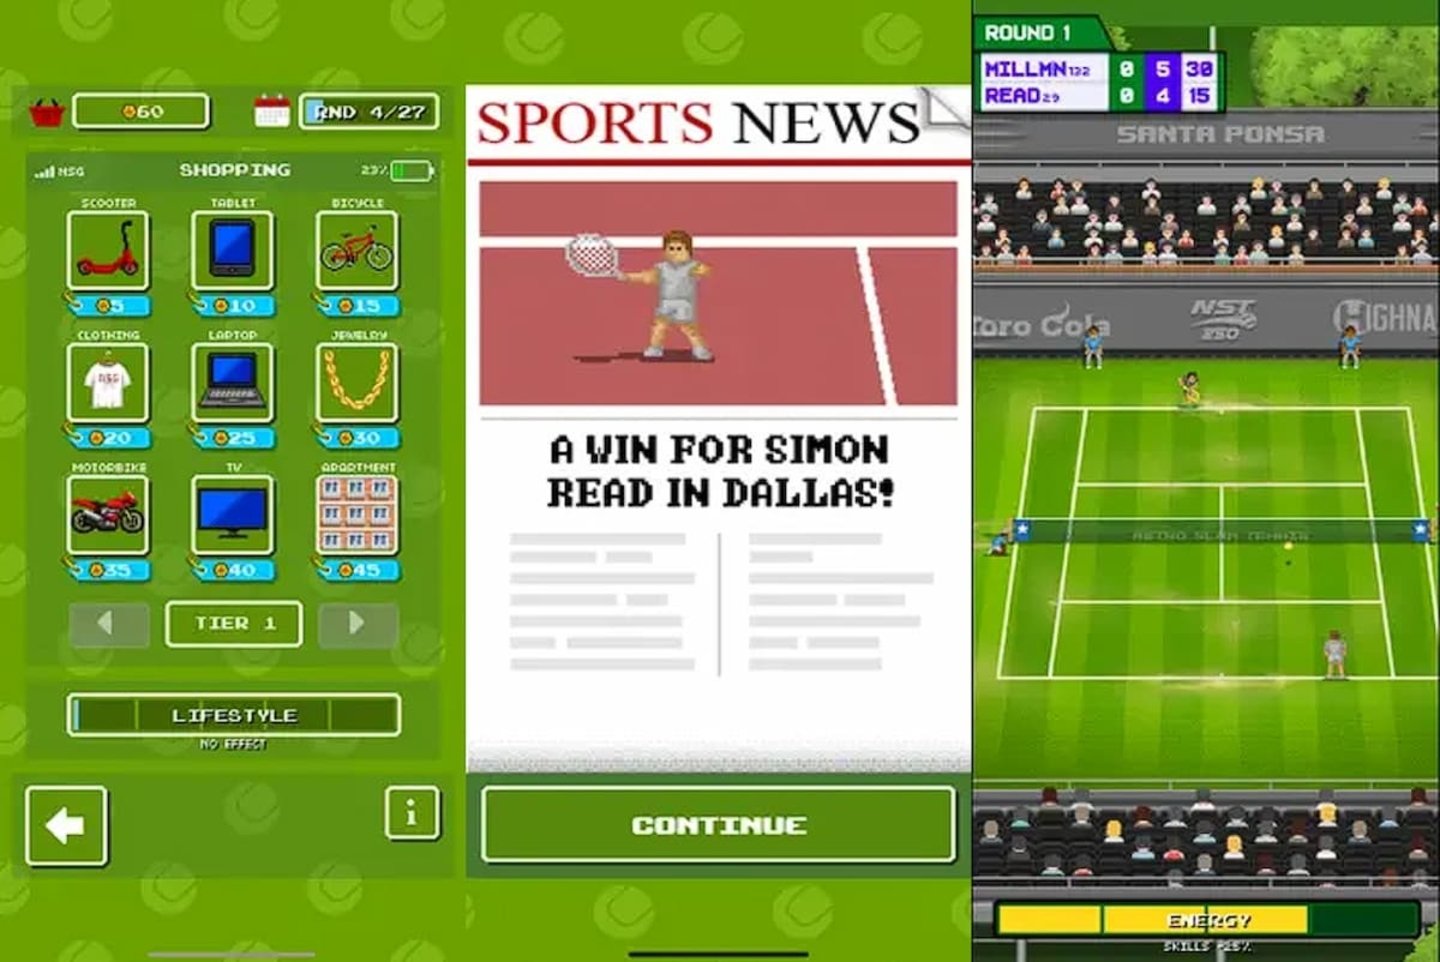 De los creadores de Retro Bowl llega ahora Retro Slam Tennis, ya disponible en iOS